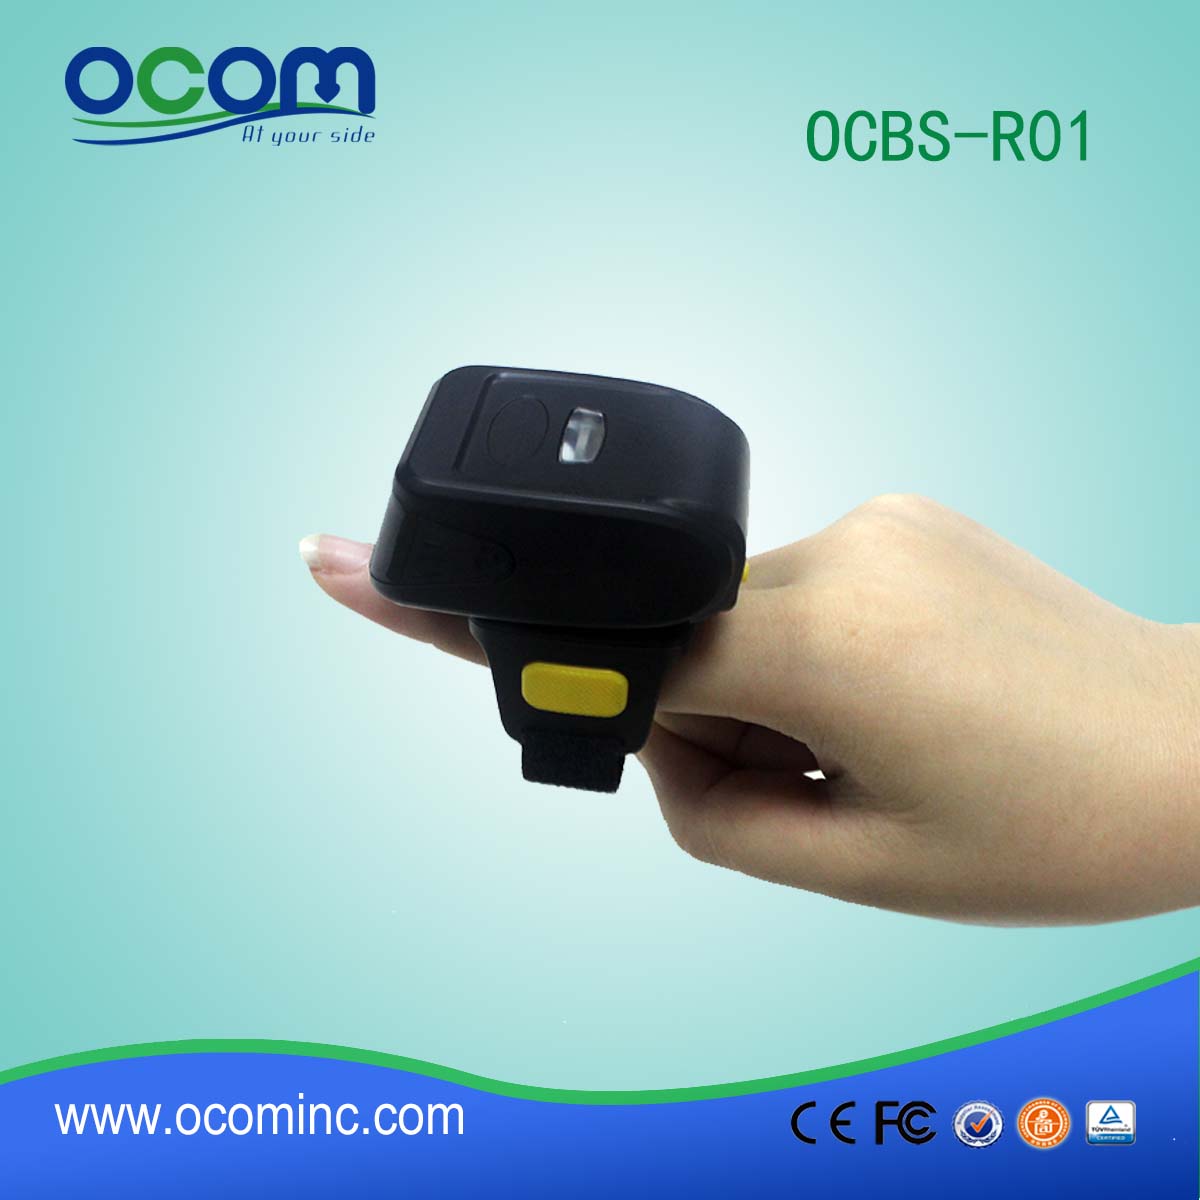 OCBS-R01 niedrigsten Preis Klein und leicht tragbar Bluetooth Barcode-Leser